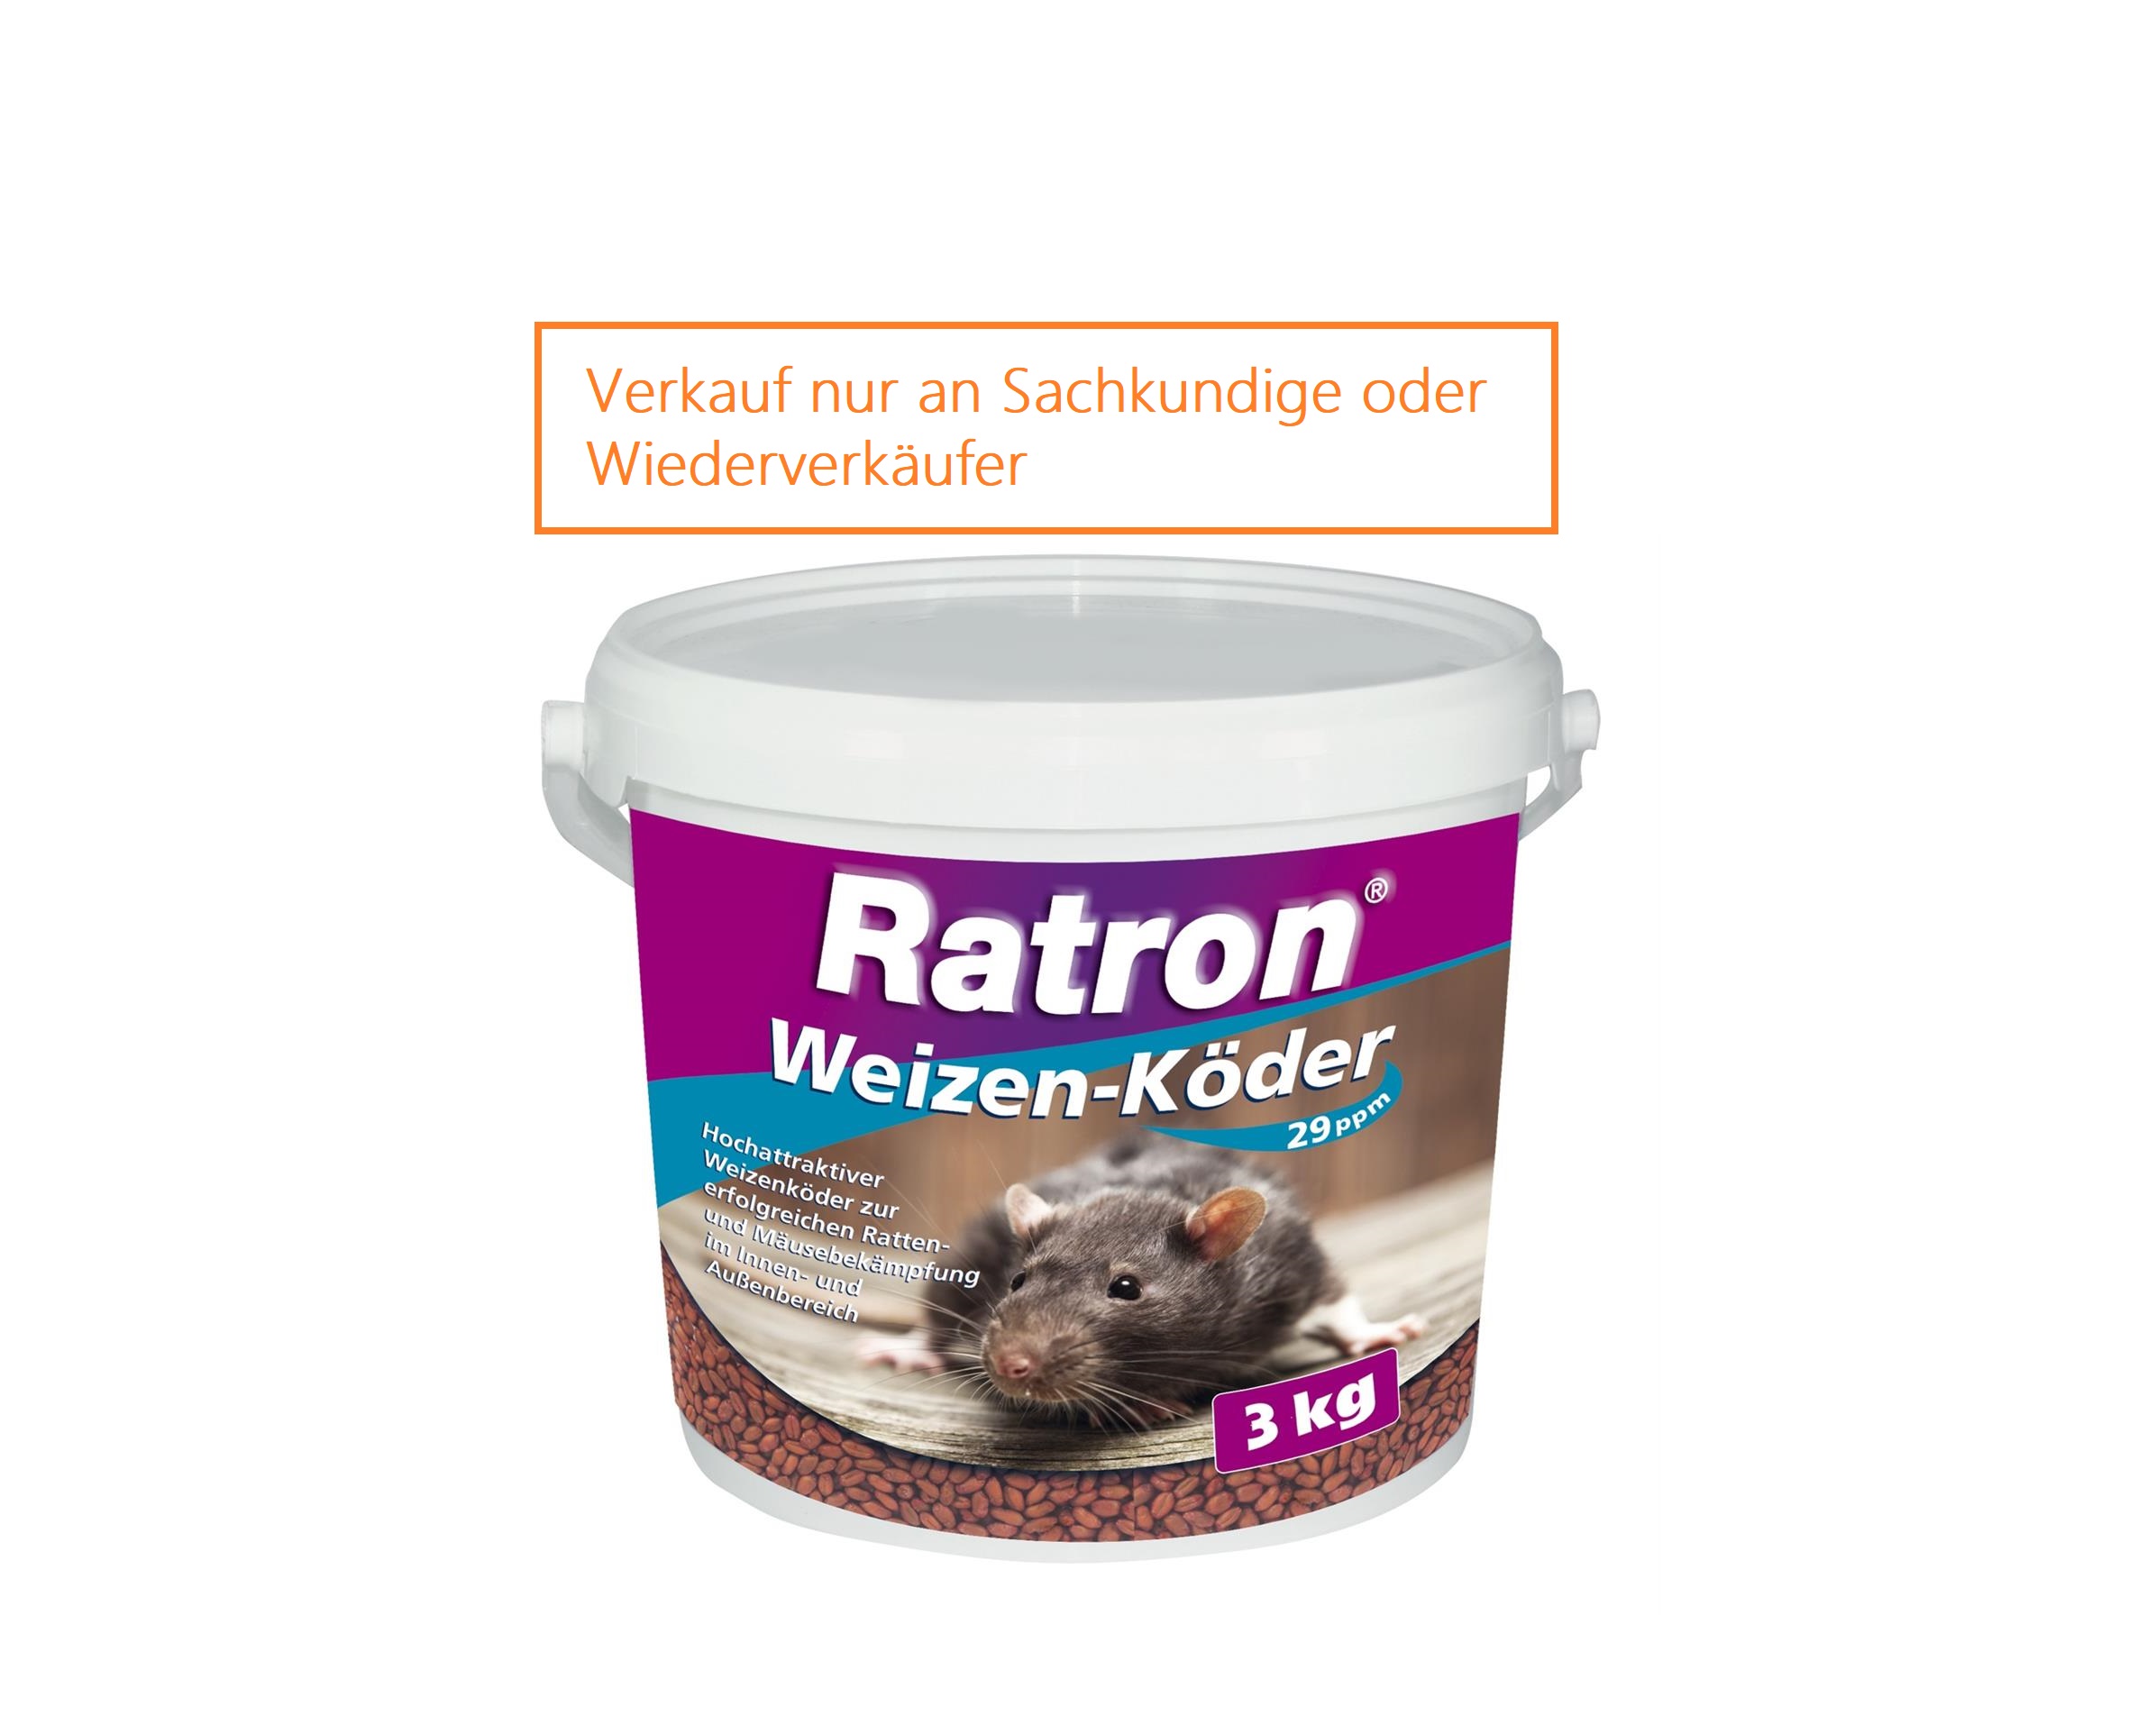 Ratron Weizenköder 29 ppm, 3 kg